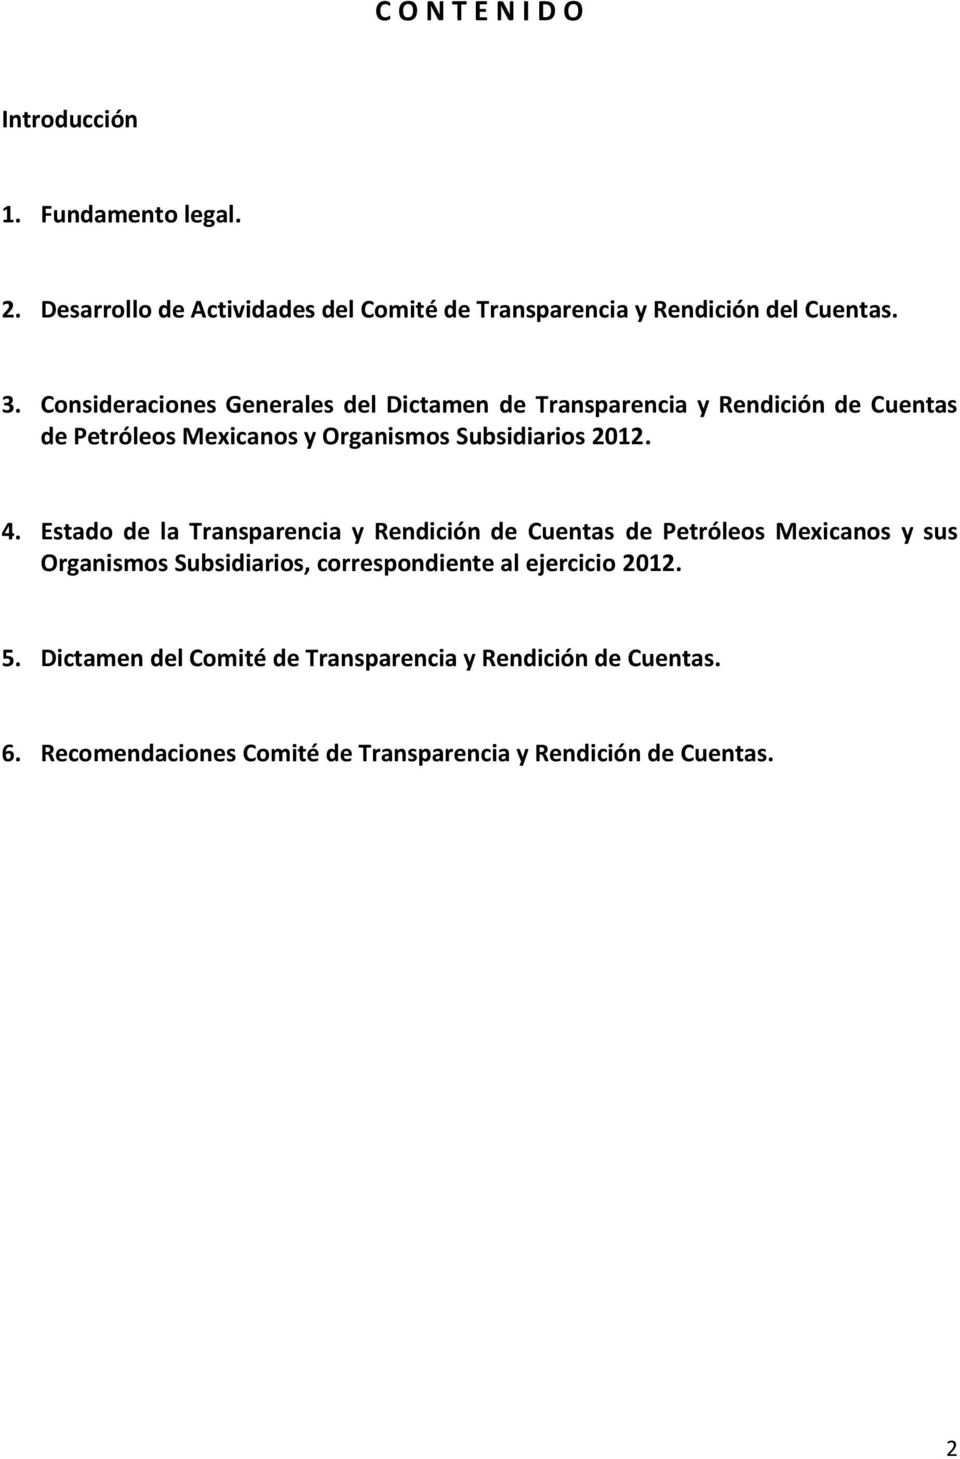 Estado de la Transparencia y Rendición de Cuentas de Petróleos Mexicanos y sus Organismos Subsidiarios, correspondiente al ejercicio